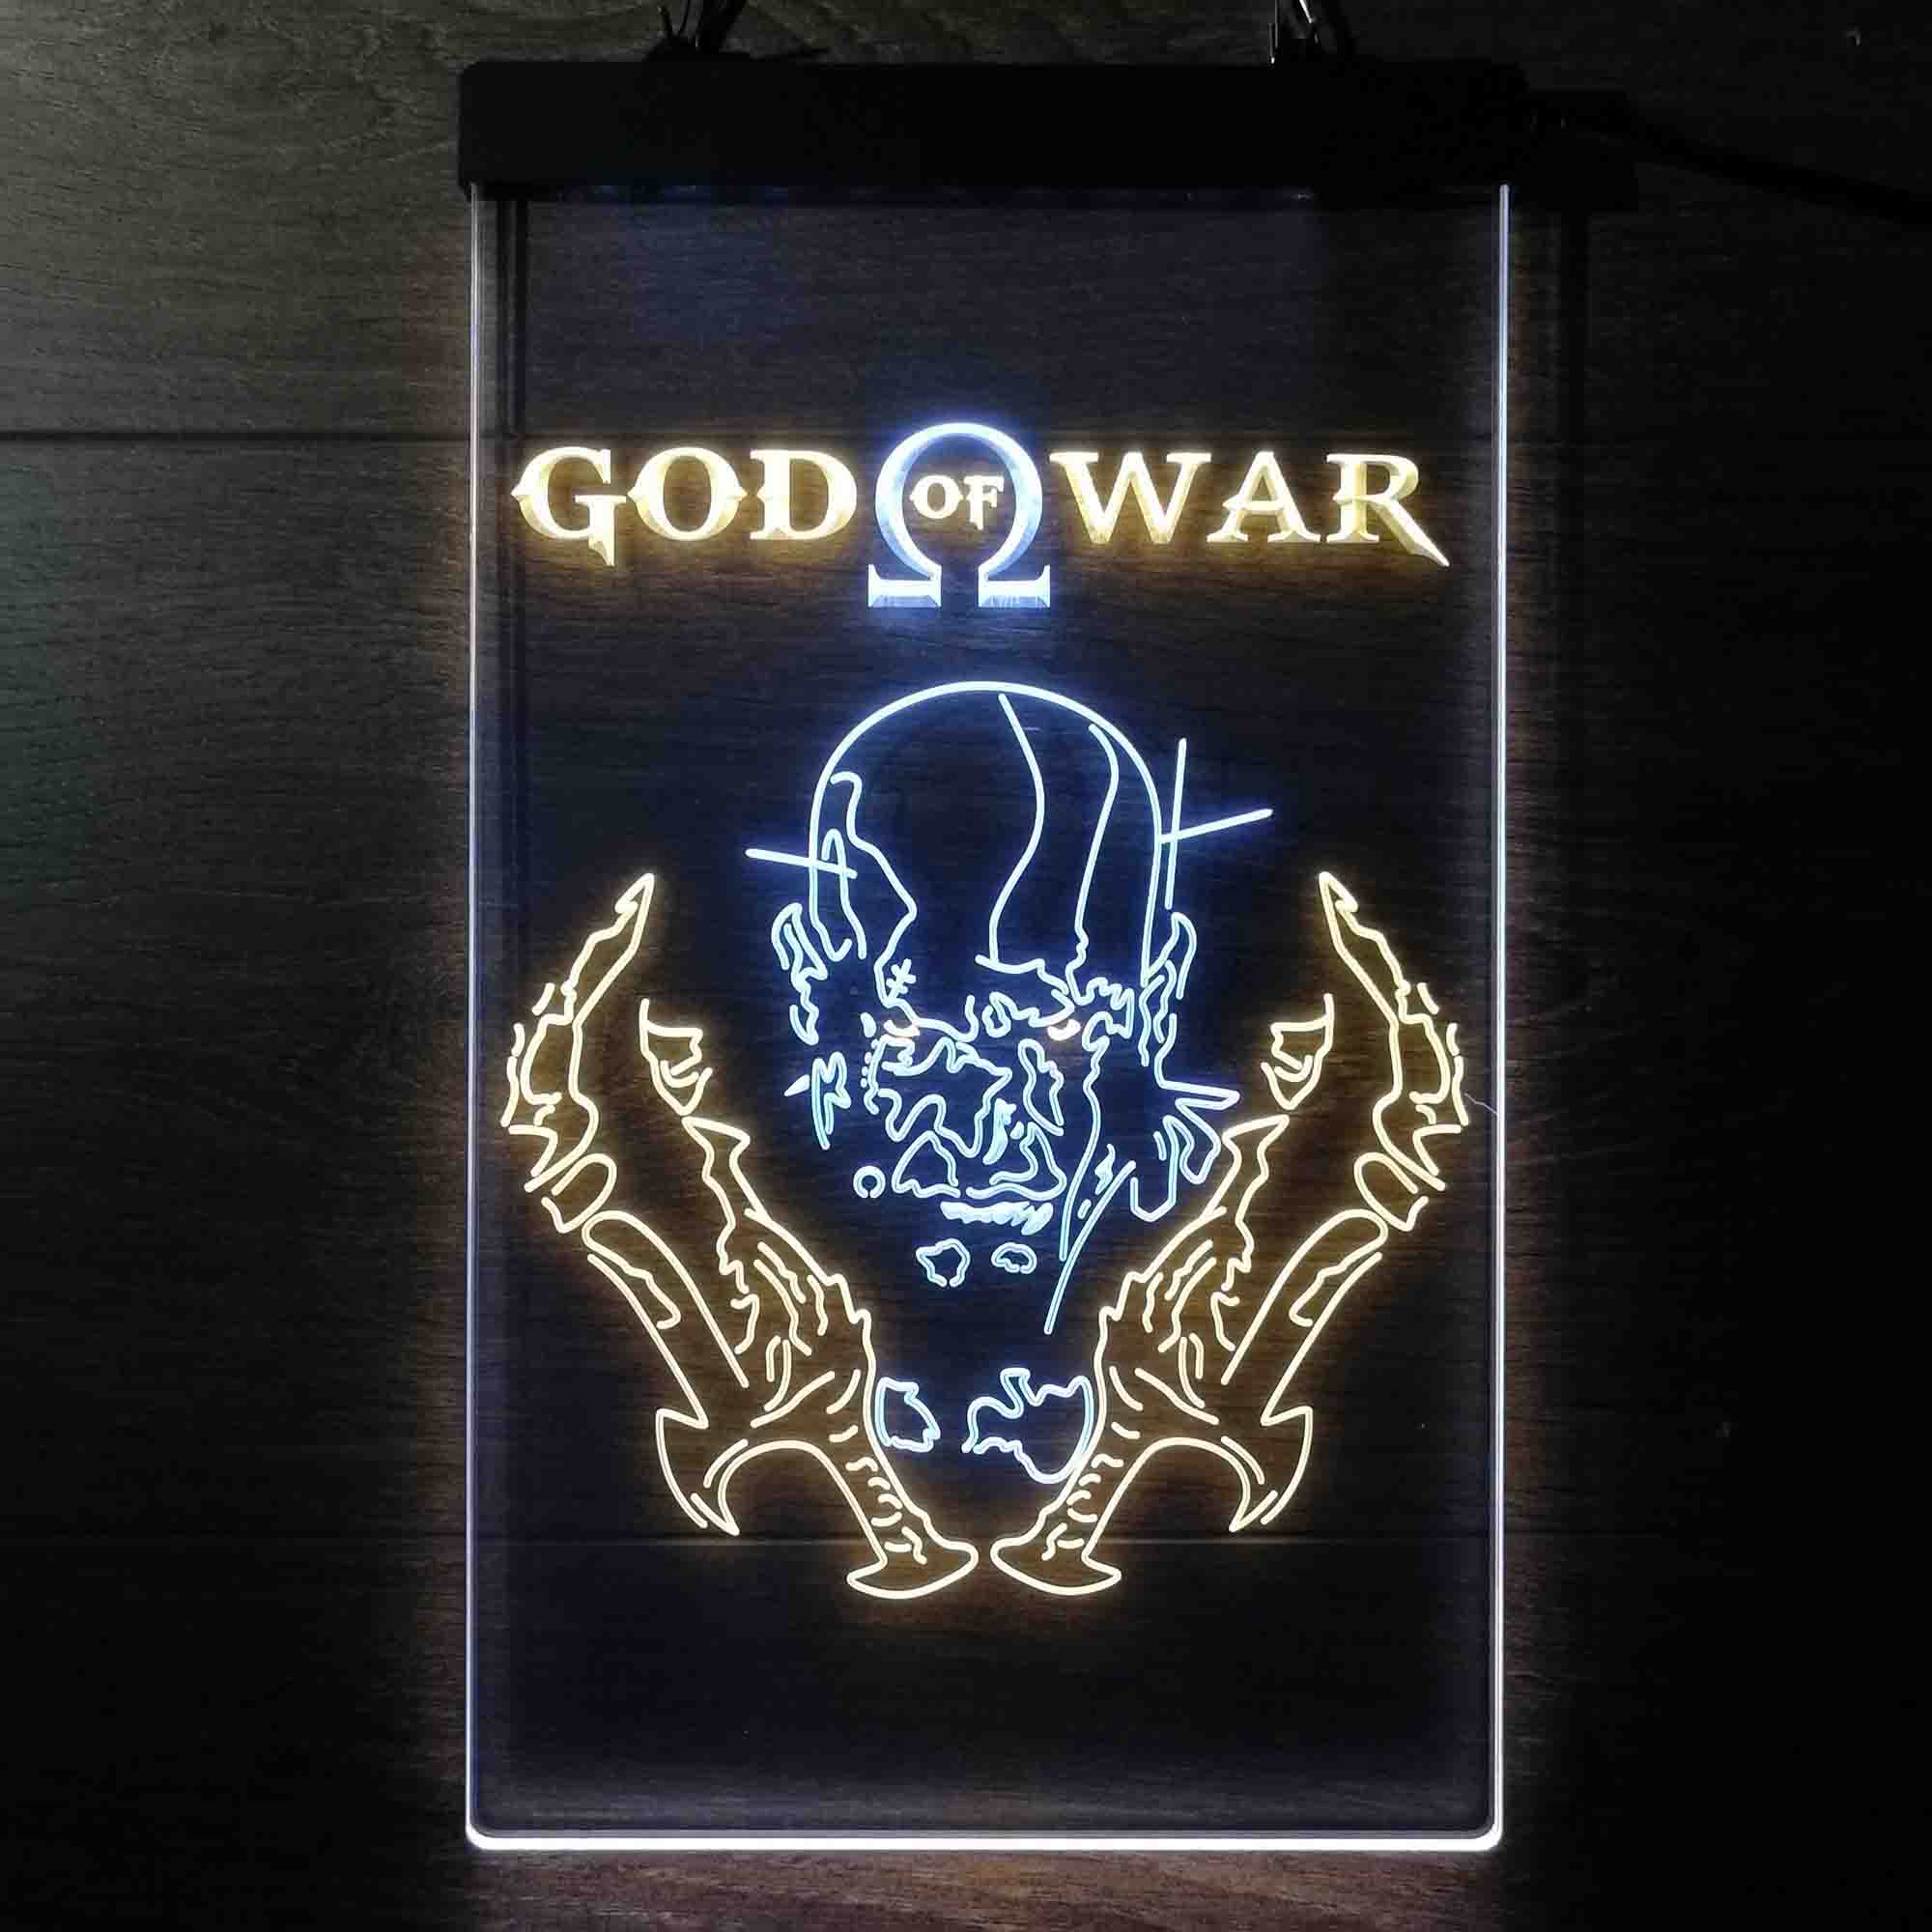 God of War Krato Game Room Neon Light LED Sign